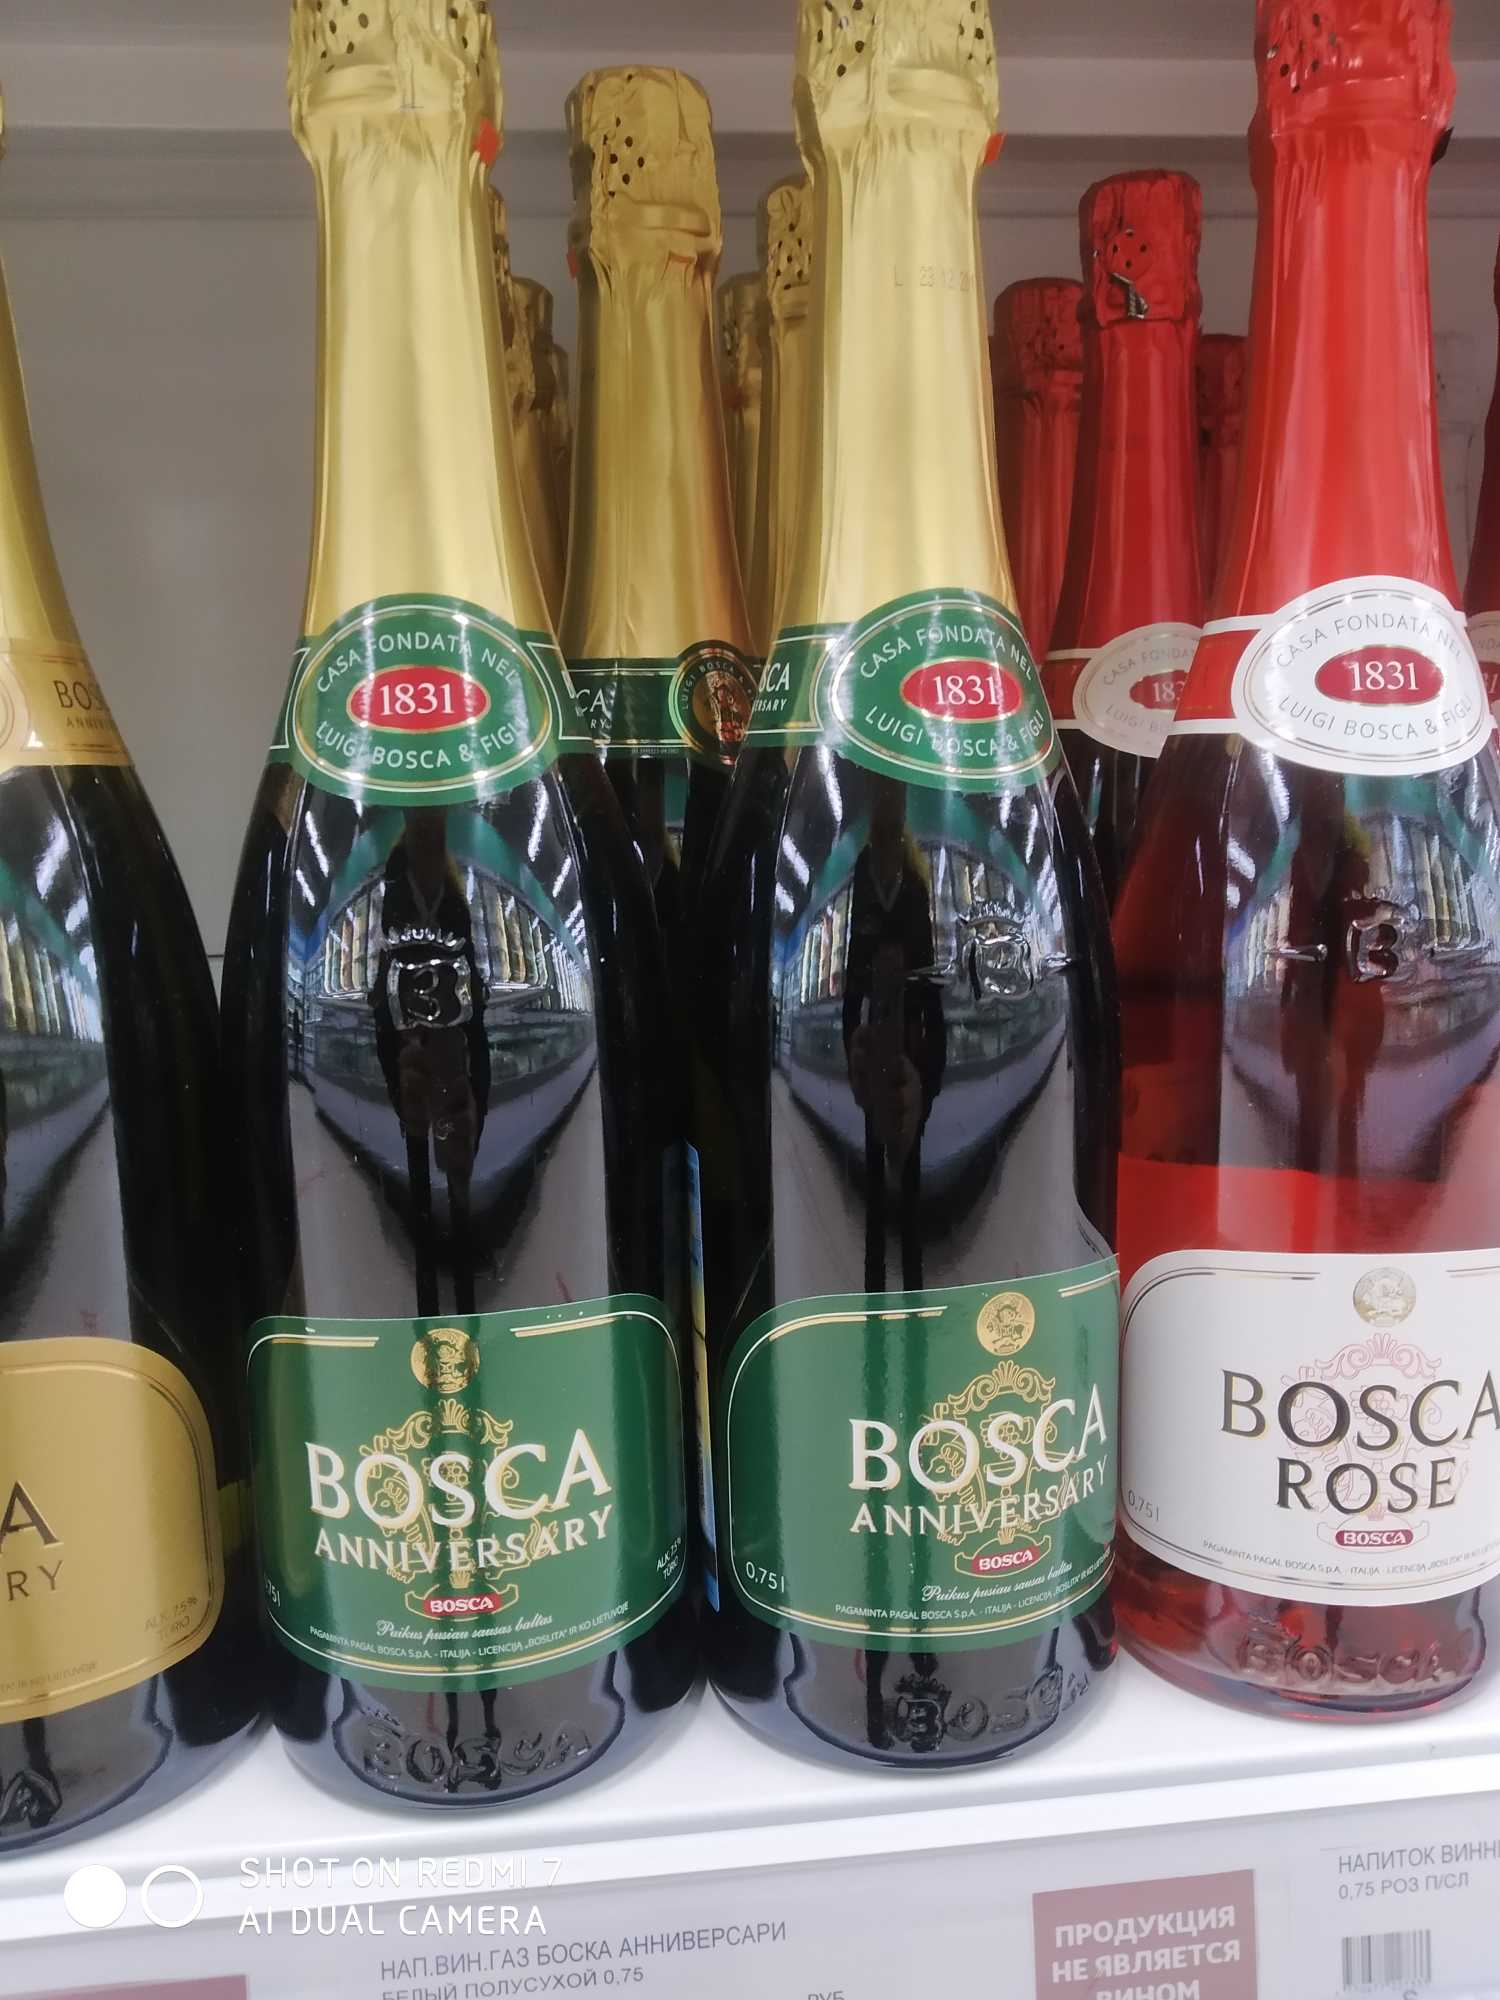 Красно белое боско цена. Винный напиток Bosca Боско. Боско шампанское Анниверсари. Напиток винный Bosca Анниверсари. Винный напиток Bosca Rose 0.75.